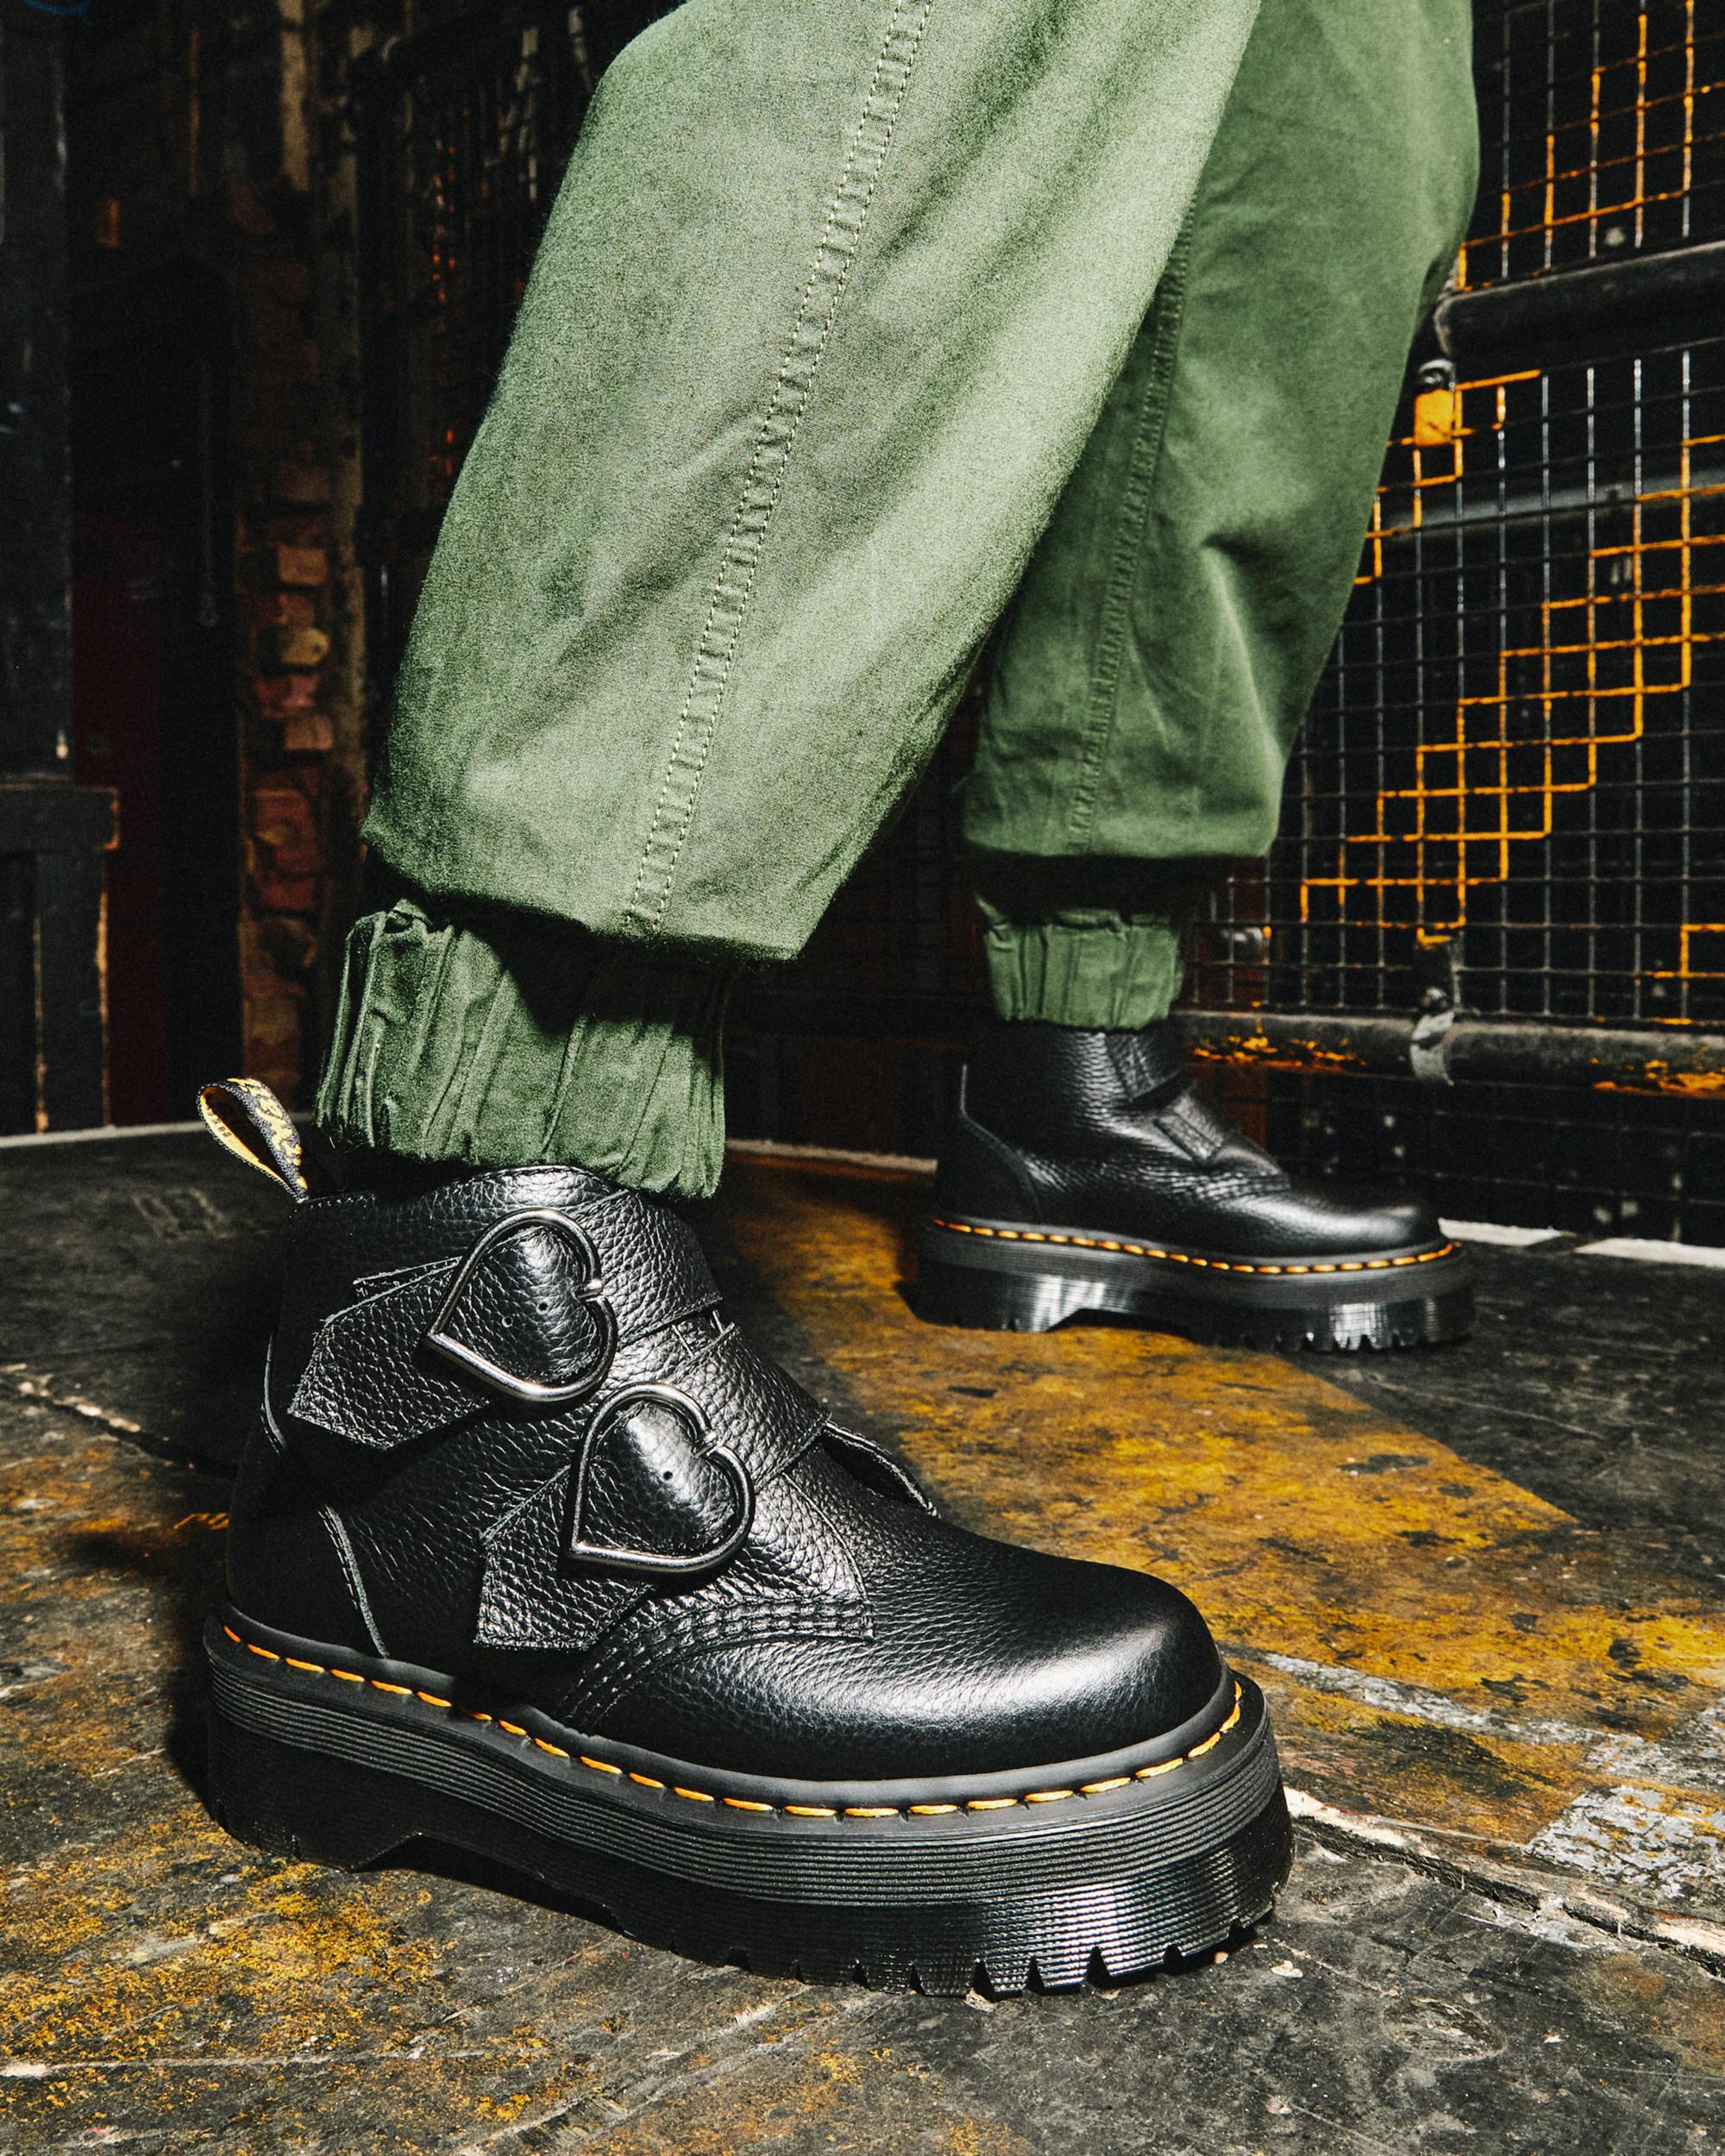 Devon Heart Leather Platform Boots in Black | Dr. Martens